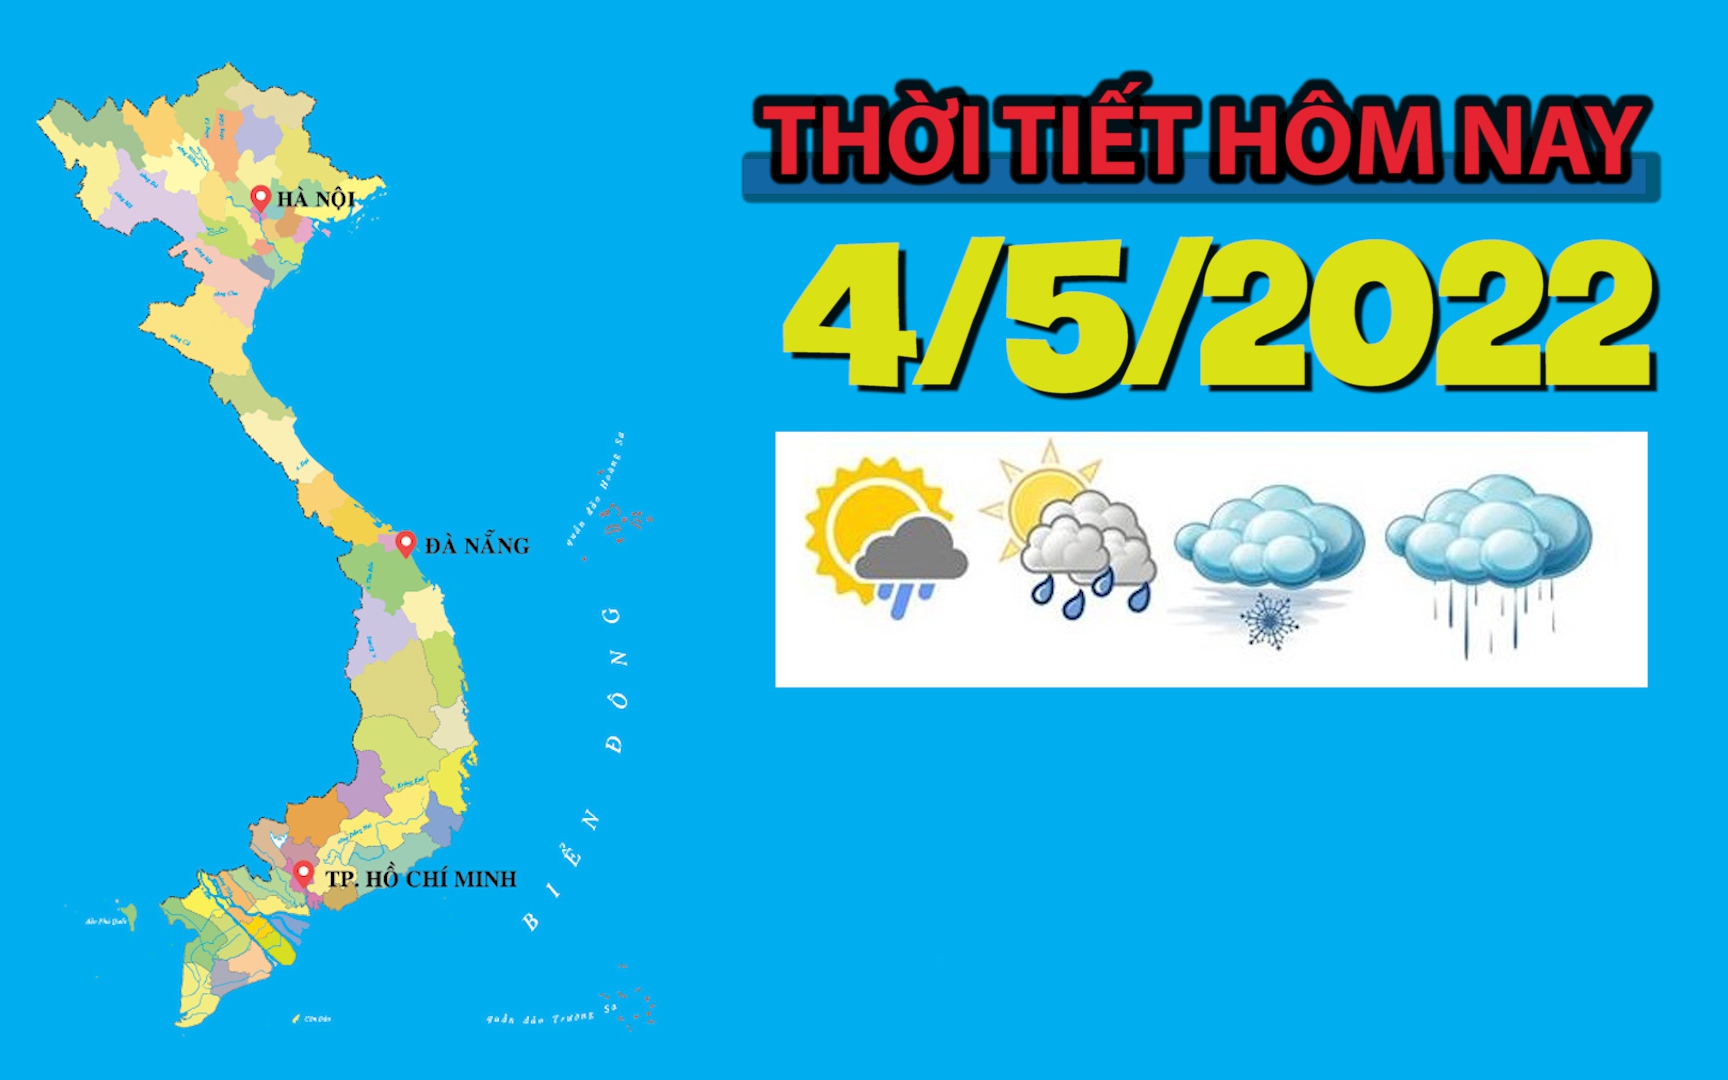 Thời tiết hôm nay 4/5/2022: Tây Nguyên và Nam Bộ có mưa to cục bộ